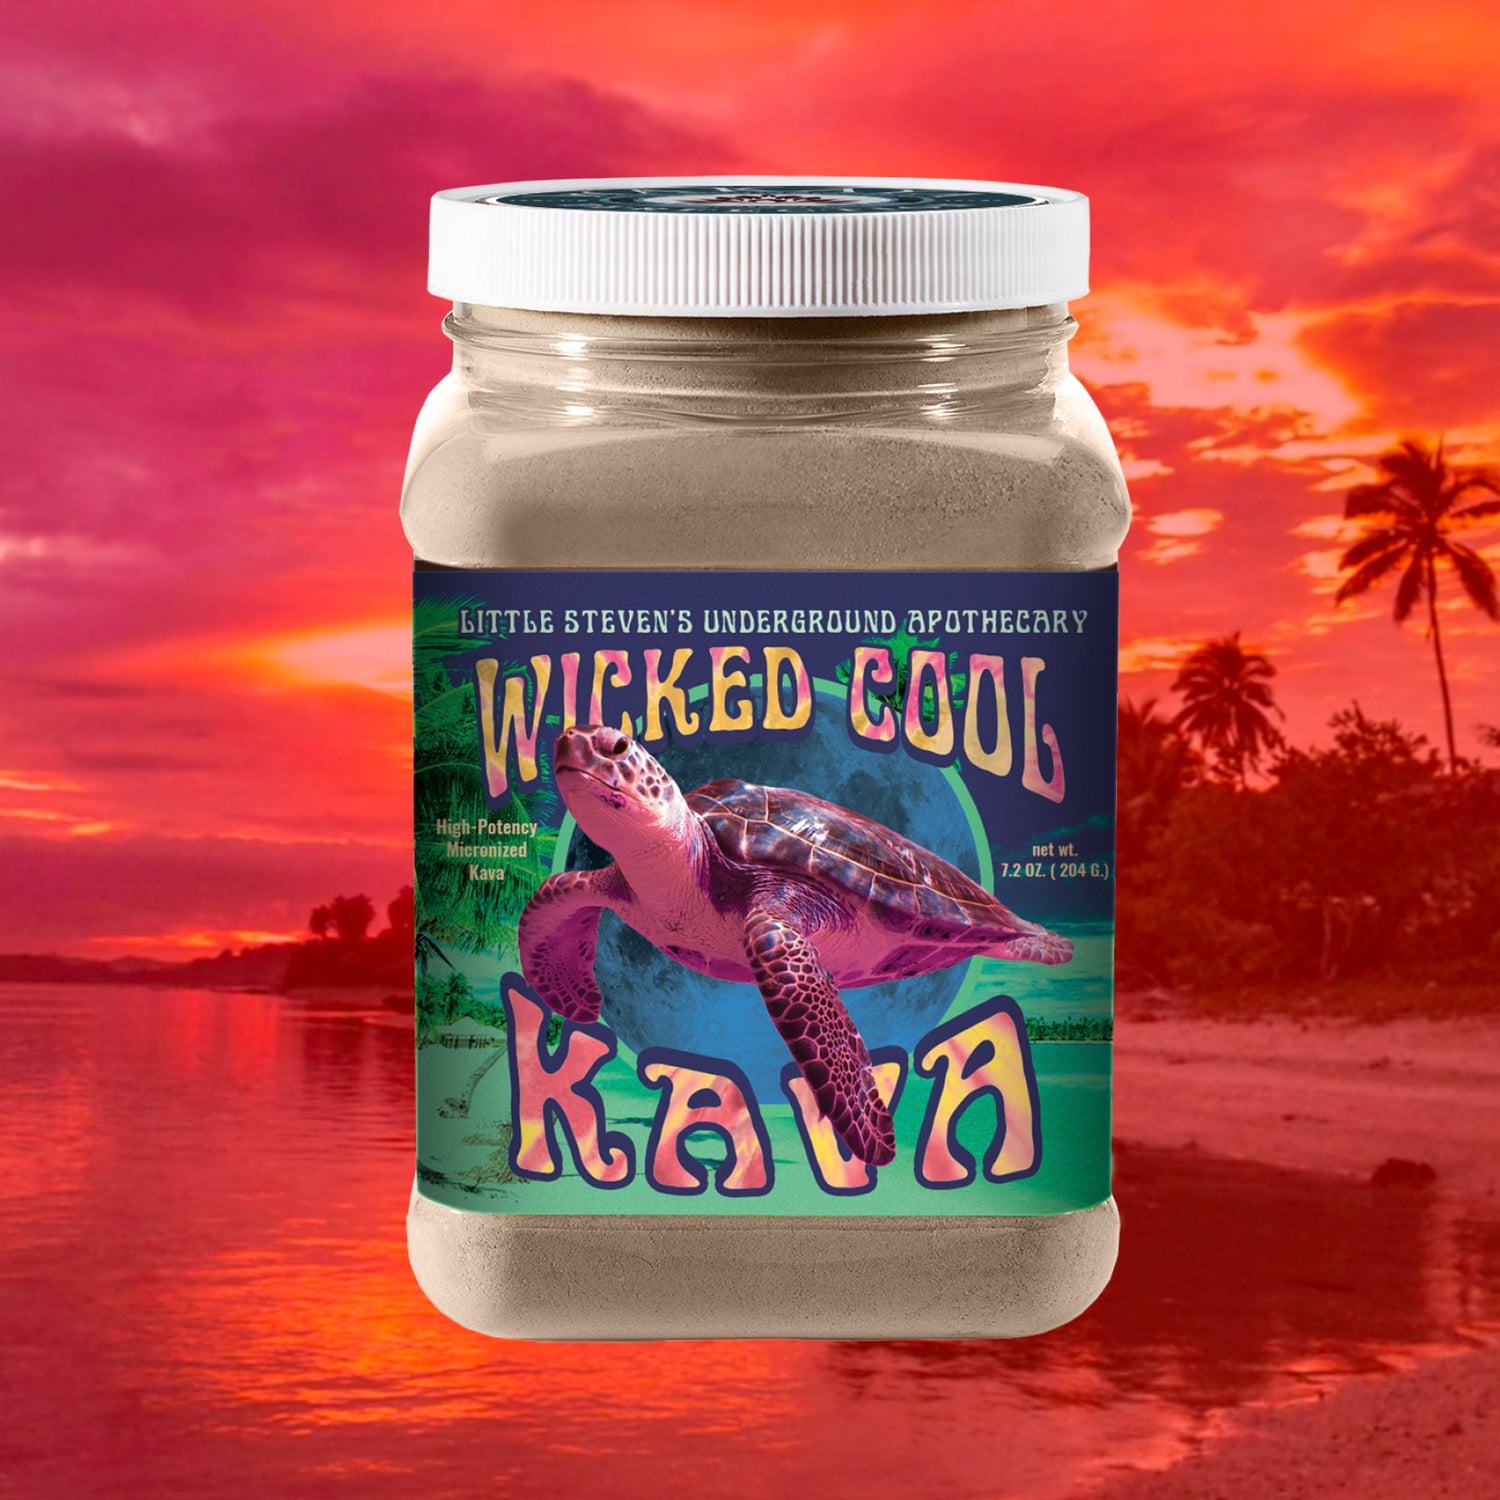 High-Potency Micronized Kava (7.2 oz) - Wicked Cool Wellness